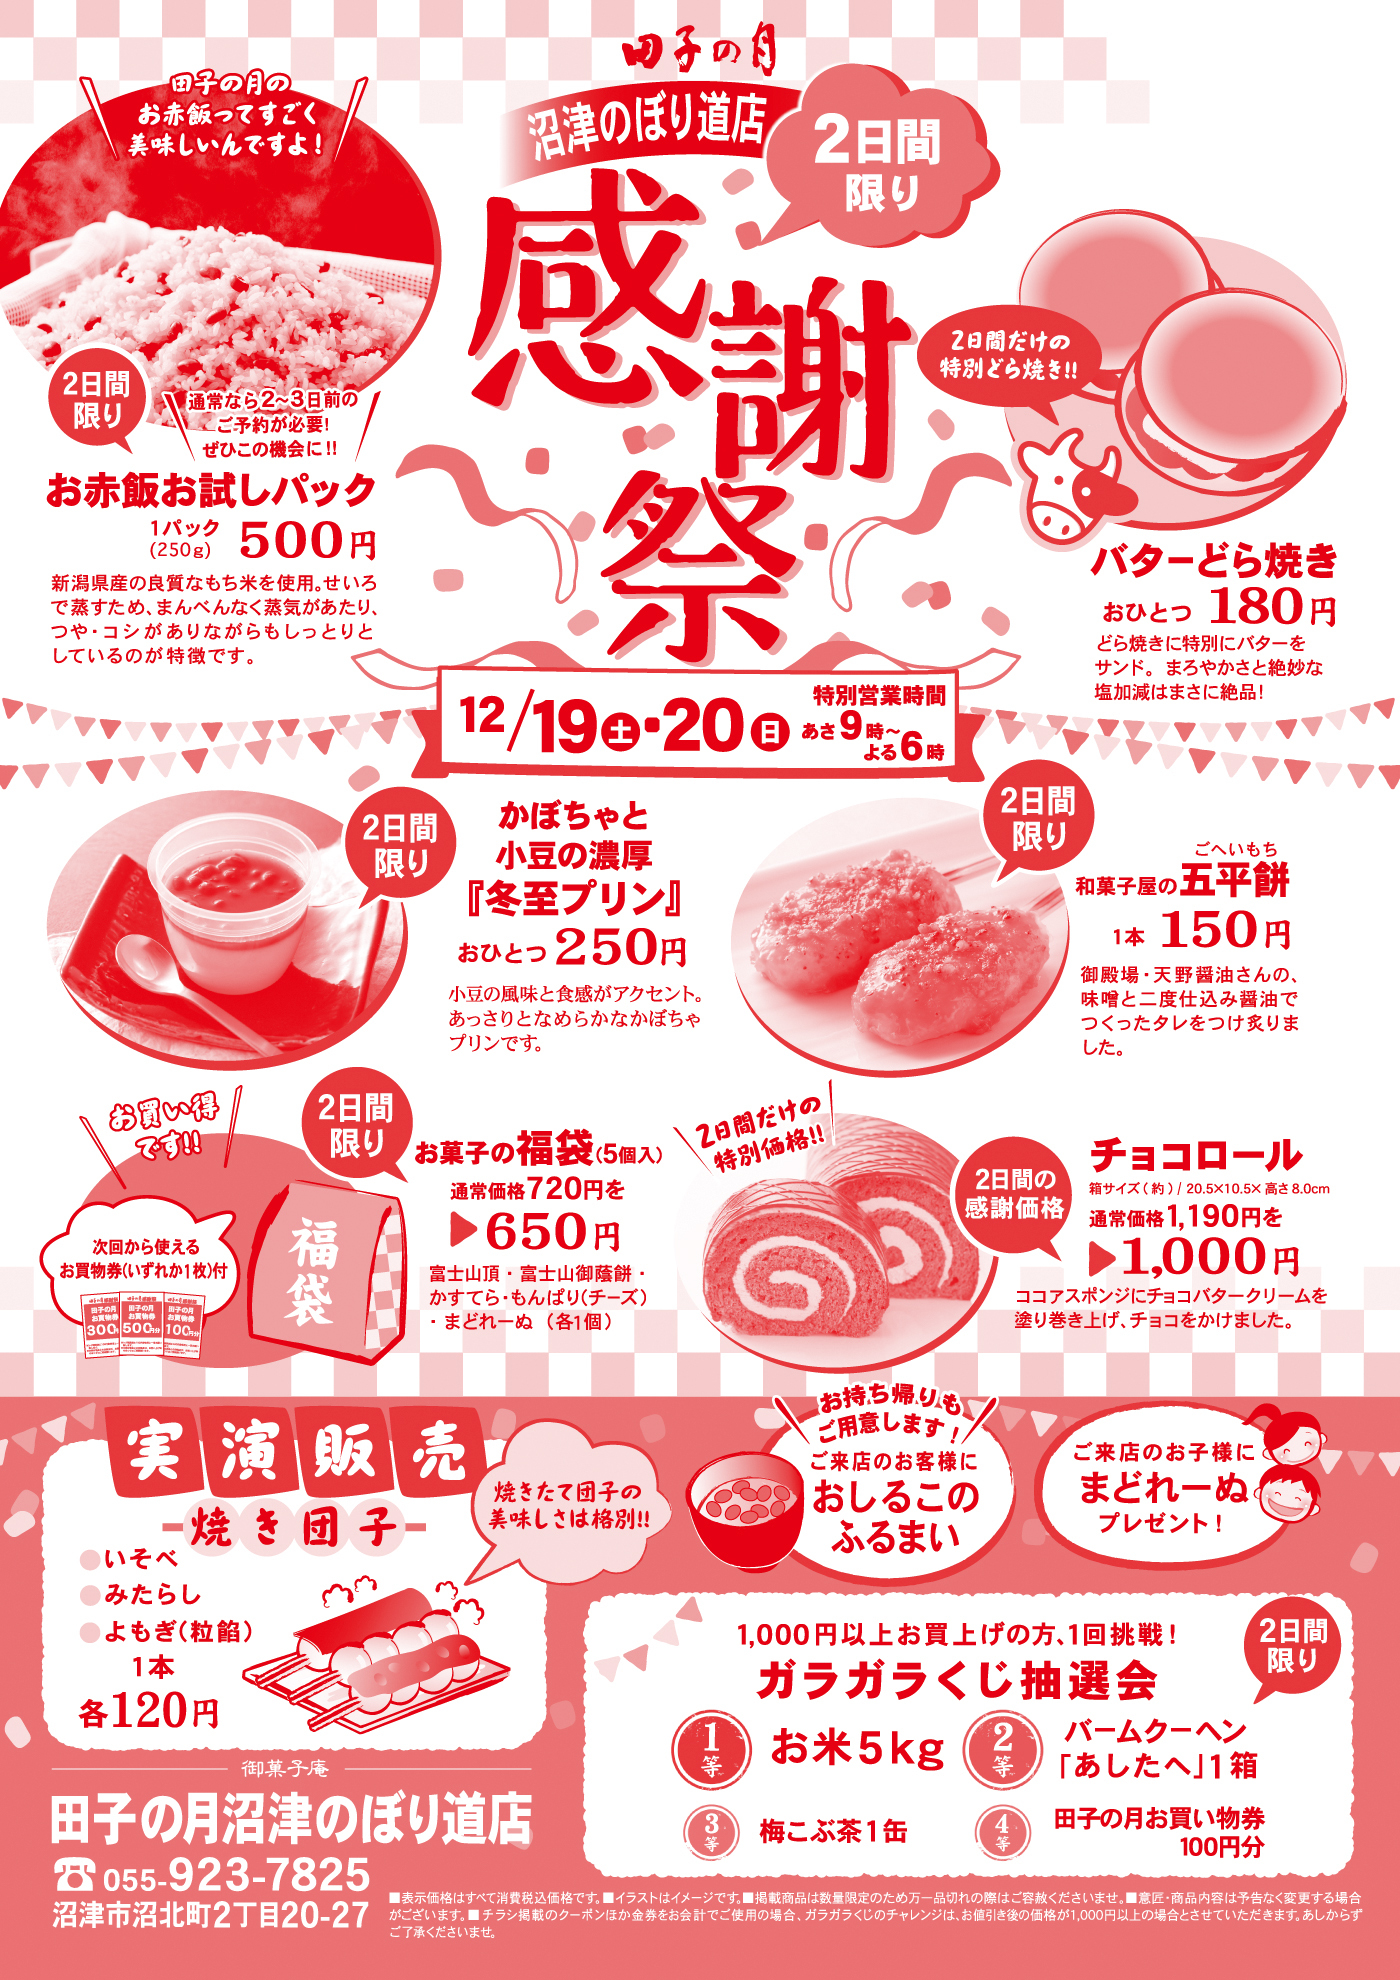 田子の月沼津のぼり道店感謝祭2日間限り12/19土20日あさ9時～よる6時田子の月のお赤飯ってすごく美味しいんですよ！通常なら2～3日前のご予約が必要！ぜひこの機会に！！2日間限りお赤飯お試しパック１パック(250ｇ)500円新潟県産の良質なもち米を使用。せいろで蒸すため、まんべんなく蒸気があたり、つや・コシがありながらもしっとりとしているのが特徴です。2日間だけの特別どら焼き！！バターどら焼きおひとつ180円どら焼きに特別にバターをサンド。まろやかさと絶妙な塩加減はまさに絶品！2日間限りかぼちゃと小豆の濃厚『冬至プリン』おひとつ250円小豆の風味と食感がアクセント。あっさりとなめらかなかぼちゃのプリンです。2日間限り和菓子屋の五平餅1本150円御殿場・天野醤油さんの、味噌と二度仕込み醤油でつくったタレをつけ炙りました。2日間限りお買い得です次回から使えるお買い物券(いずれか１枚)付お菓子の福袋 (5個入)通常価格720円を650円富士山頂・富士山御蔭餅・かすてら・もんぱり(チーズ)・まどれーぬ(各１個)2日間だけの特別価格チョコロール箱サイズ(約)/20.5×10.5×高さ8.0ｃｍ通常価格1,190円を1,000円ココアスポンジにチョコバタークリームを塗り巻き上げ、チョコをかけました。実演販売焼き団子いそべみたらしよもぎ(粒餡)1本各120円焼きたて団子の美味しさは格別お持ち帰りもご用意します！ご来店のお客様におしるこのふるまいご来店のお子様にまどれーぬプレゼント1,000円以上お買い上げの方、１回挑戦ガラガラくじ抽選会１等お米５ｋｇ２等バームクーヘン「あしたへ」１箱３等梅昆布茶１缶４等田子の月お買い物券１００円分2日間限り御菓子庵田子の月沼津のぼり道店055-923-7825沼津市沼北町2丁目20-27表示価格はすべて消費税込価格です。イラストはイメージです。掲載商品は数量限定のため万一品切れの際はご容赦くださいませ。意匠・商品内容は予告なく変更する場合がございます。チラシ掲載のクーポンほか金券をお会計でご使用の場合、ガラガラくじのチャレンジは、お値引後の価格が1,000円以上の場合とさせていただきます。あしからずご了承くださいませ。